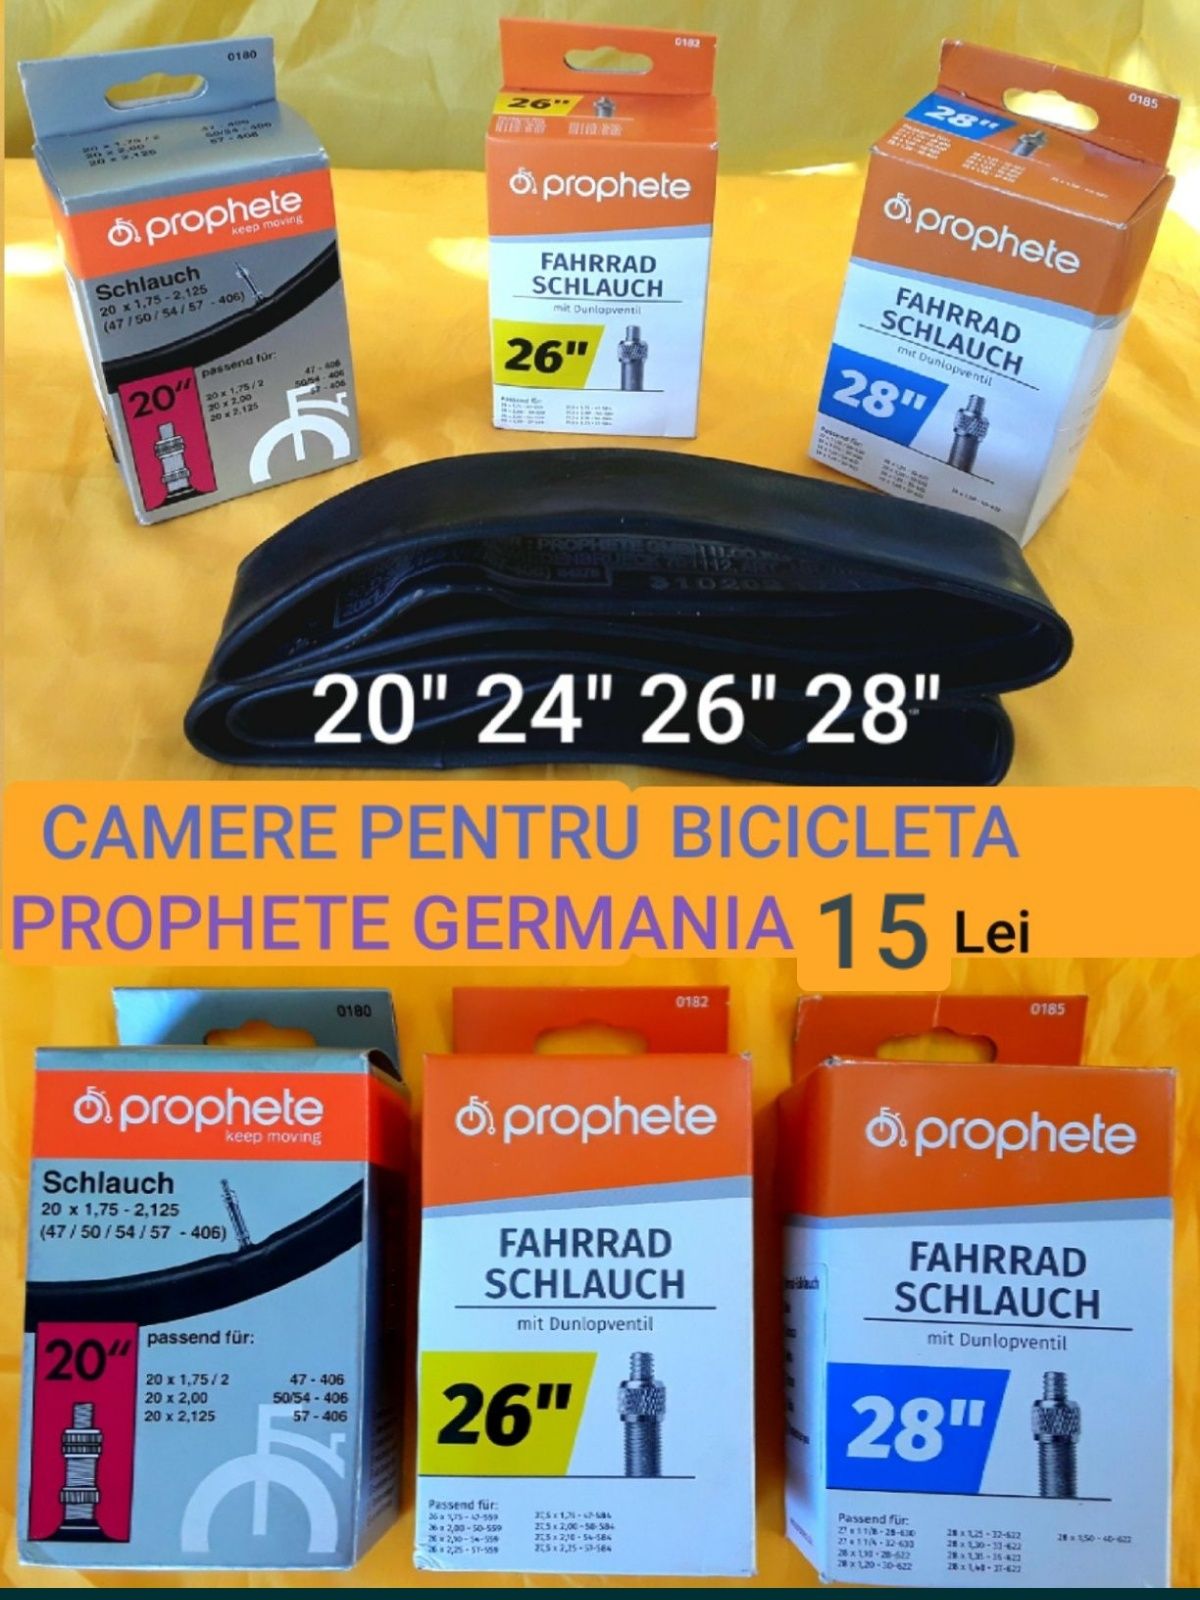 CAMERE PREMIUM PROPHETE (Germania ) Pentru Bicicletă - 20 Lei/Bucata